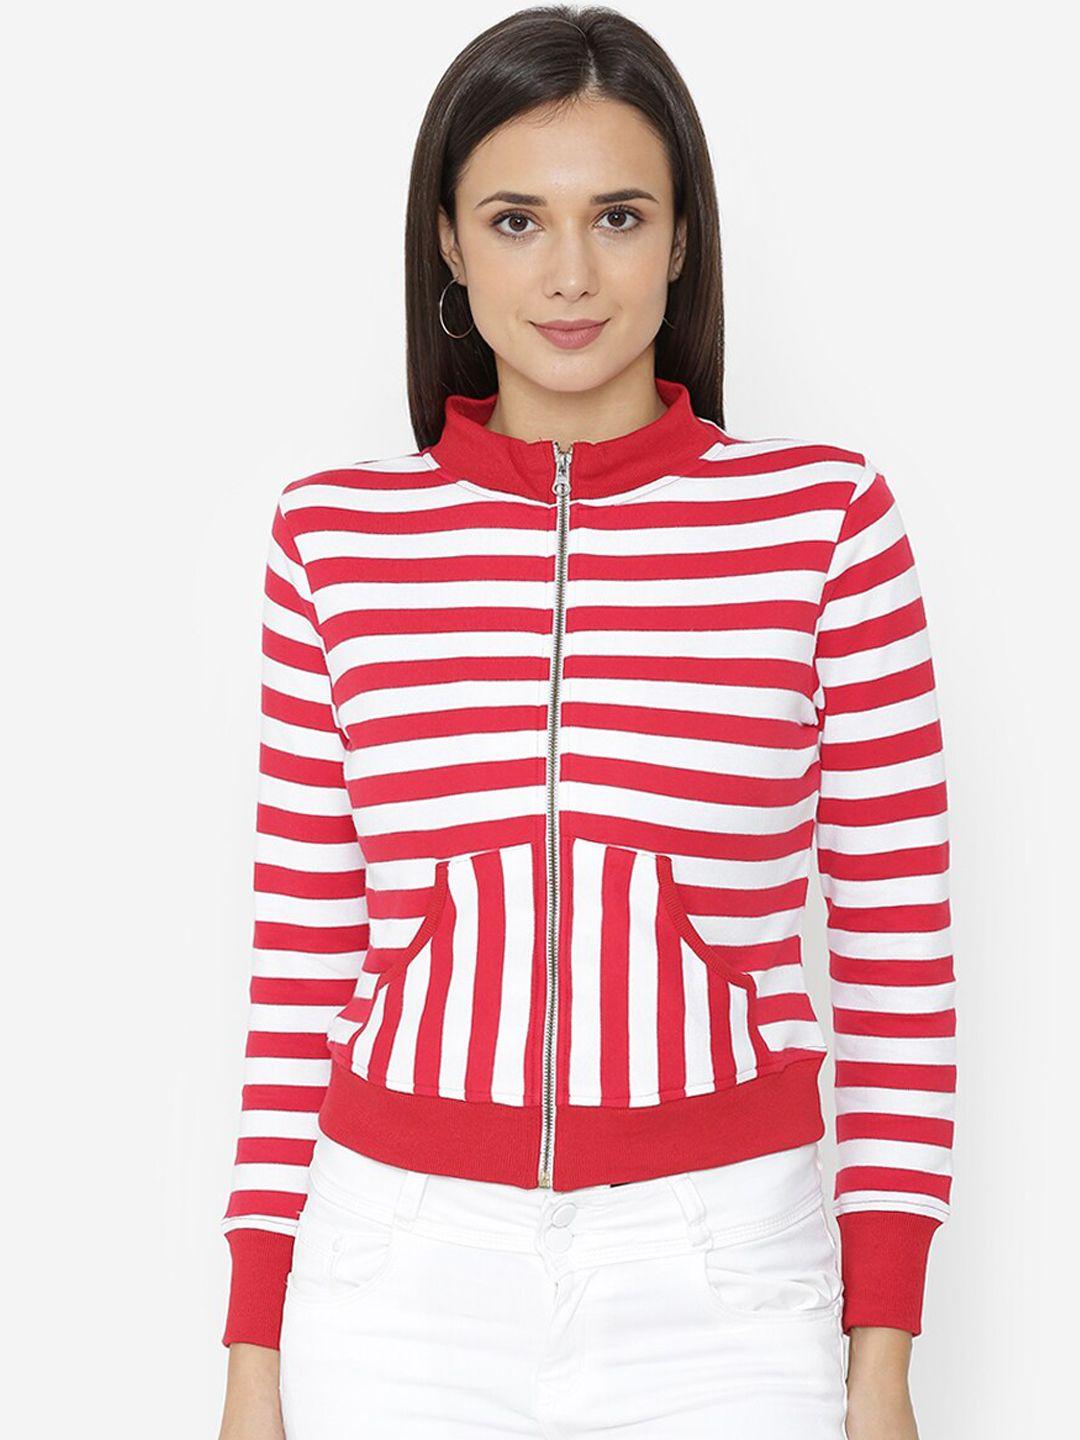 yaadleen women red striped sweatshirt